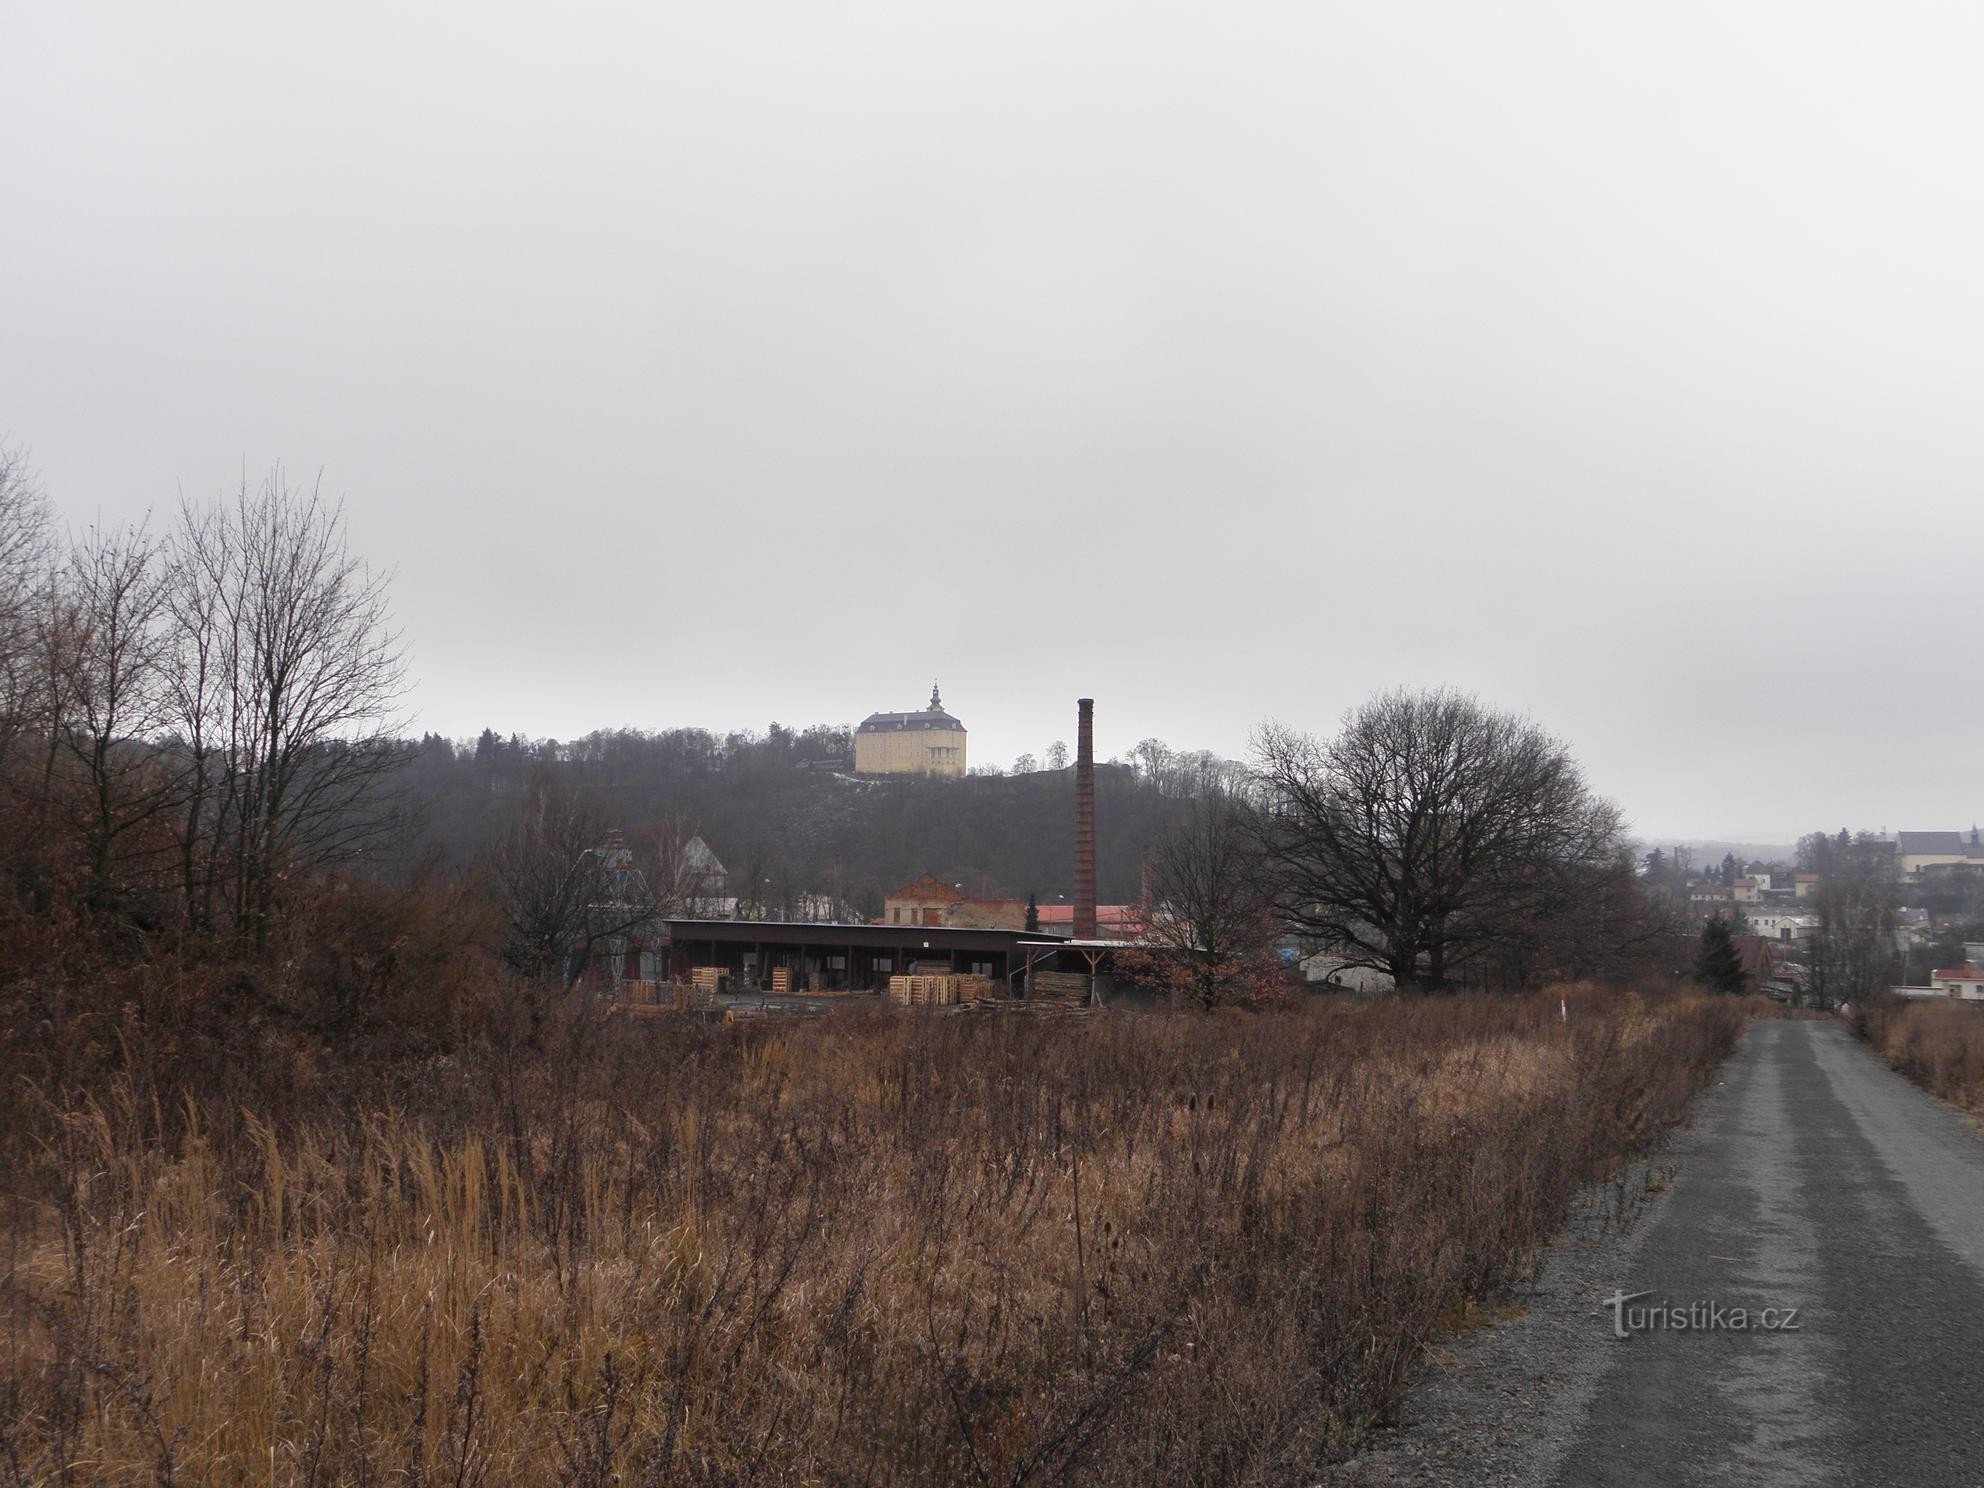 Fulnec 城堡景观 - 1.1.2012